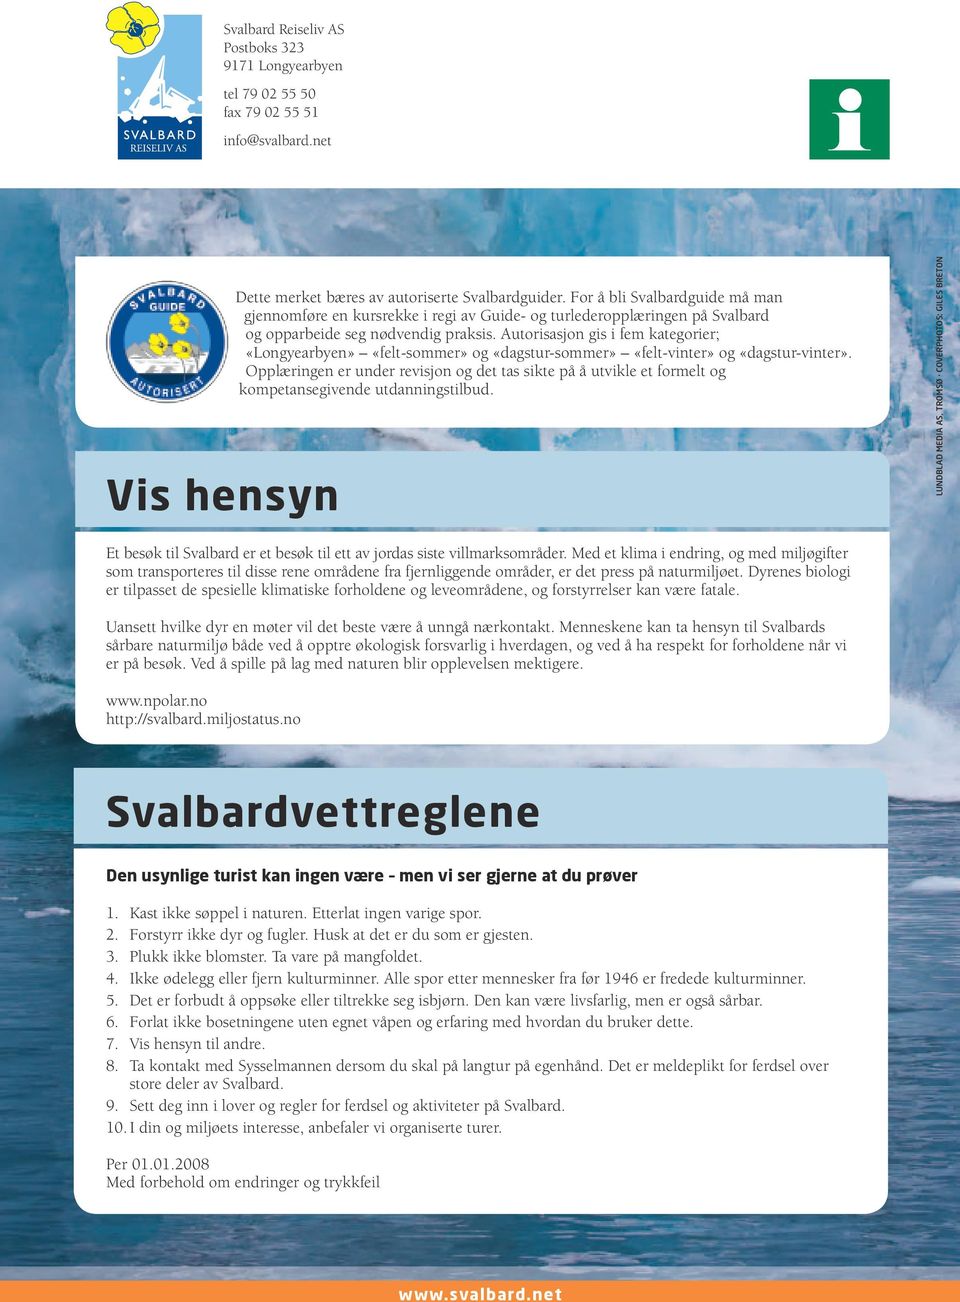 Autorisasjon gis i fem kategorier; «Longyearbyen» «felt-sommer» og «dagstur-sommer» «felt-vinter» og «dagstur-vinter».